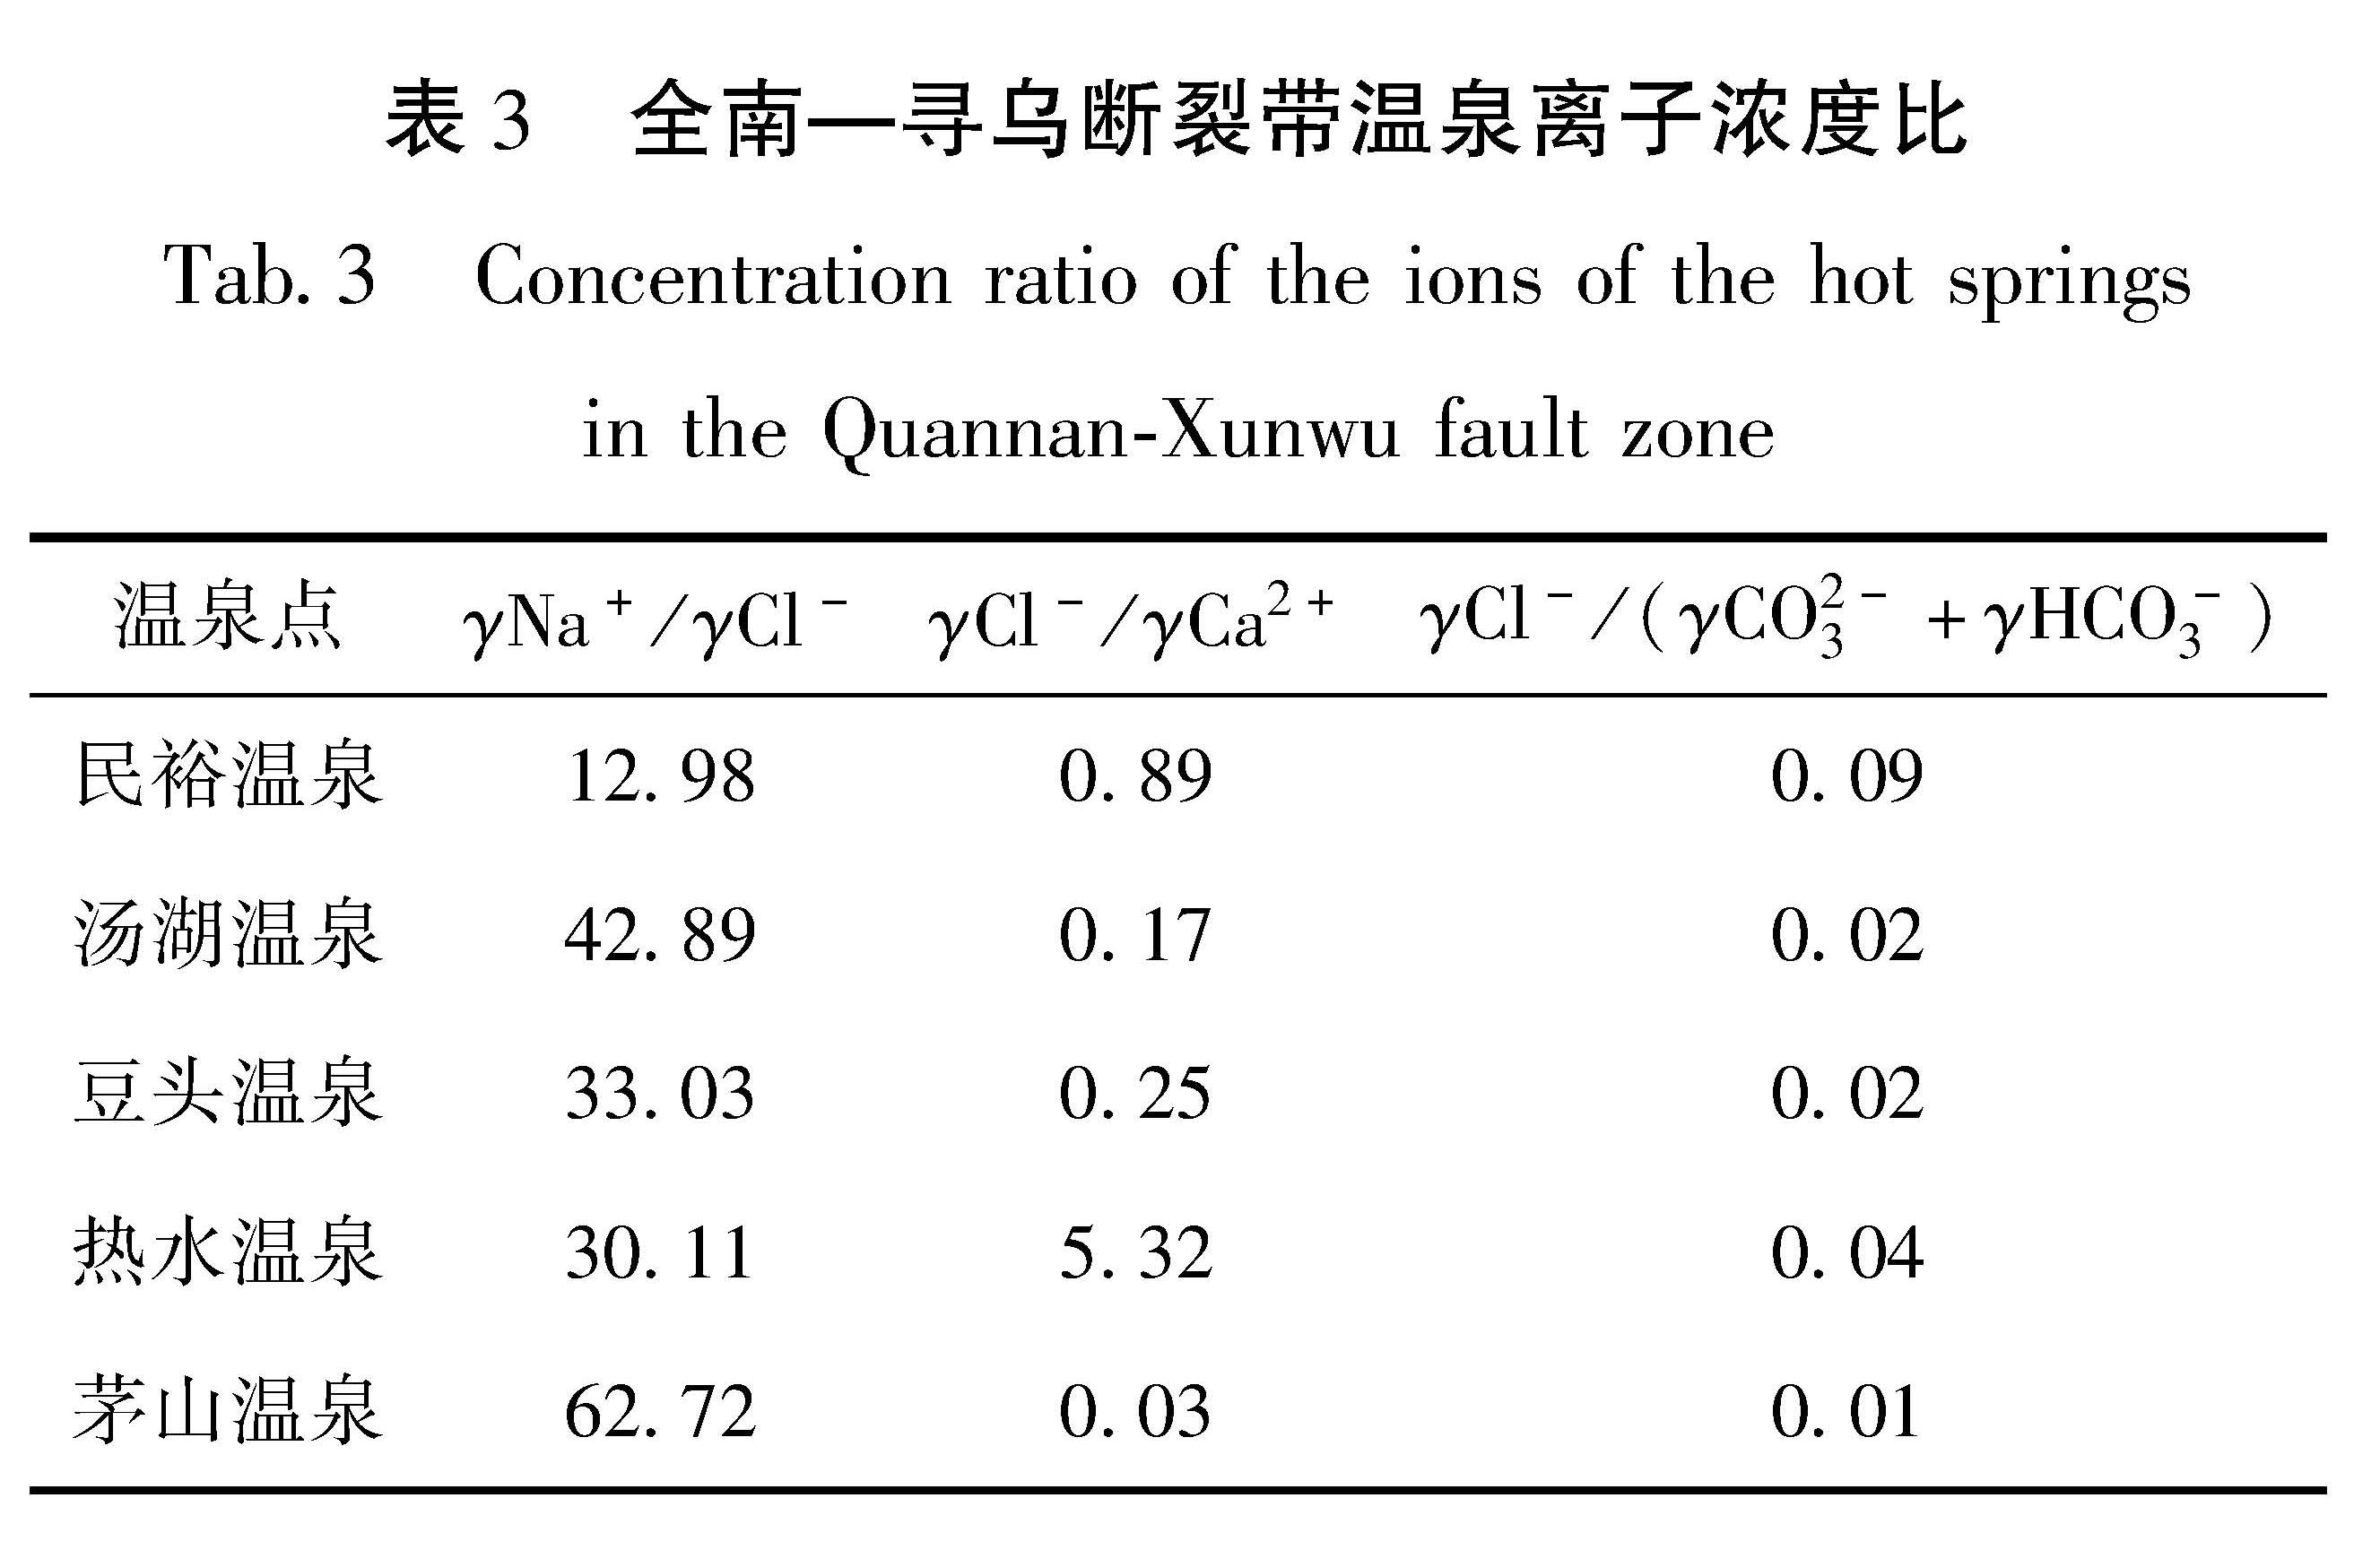 表3 全南—寻乌断裂带温泉离子浓度比<br/>Tab.3 Concentration ratio of the ions of the hot springs in the Quannan-Xunwu fault zone